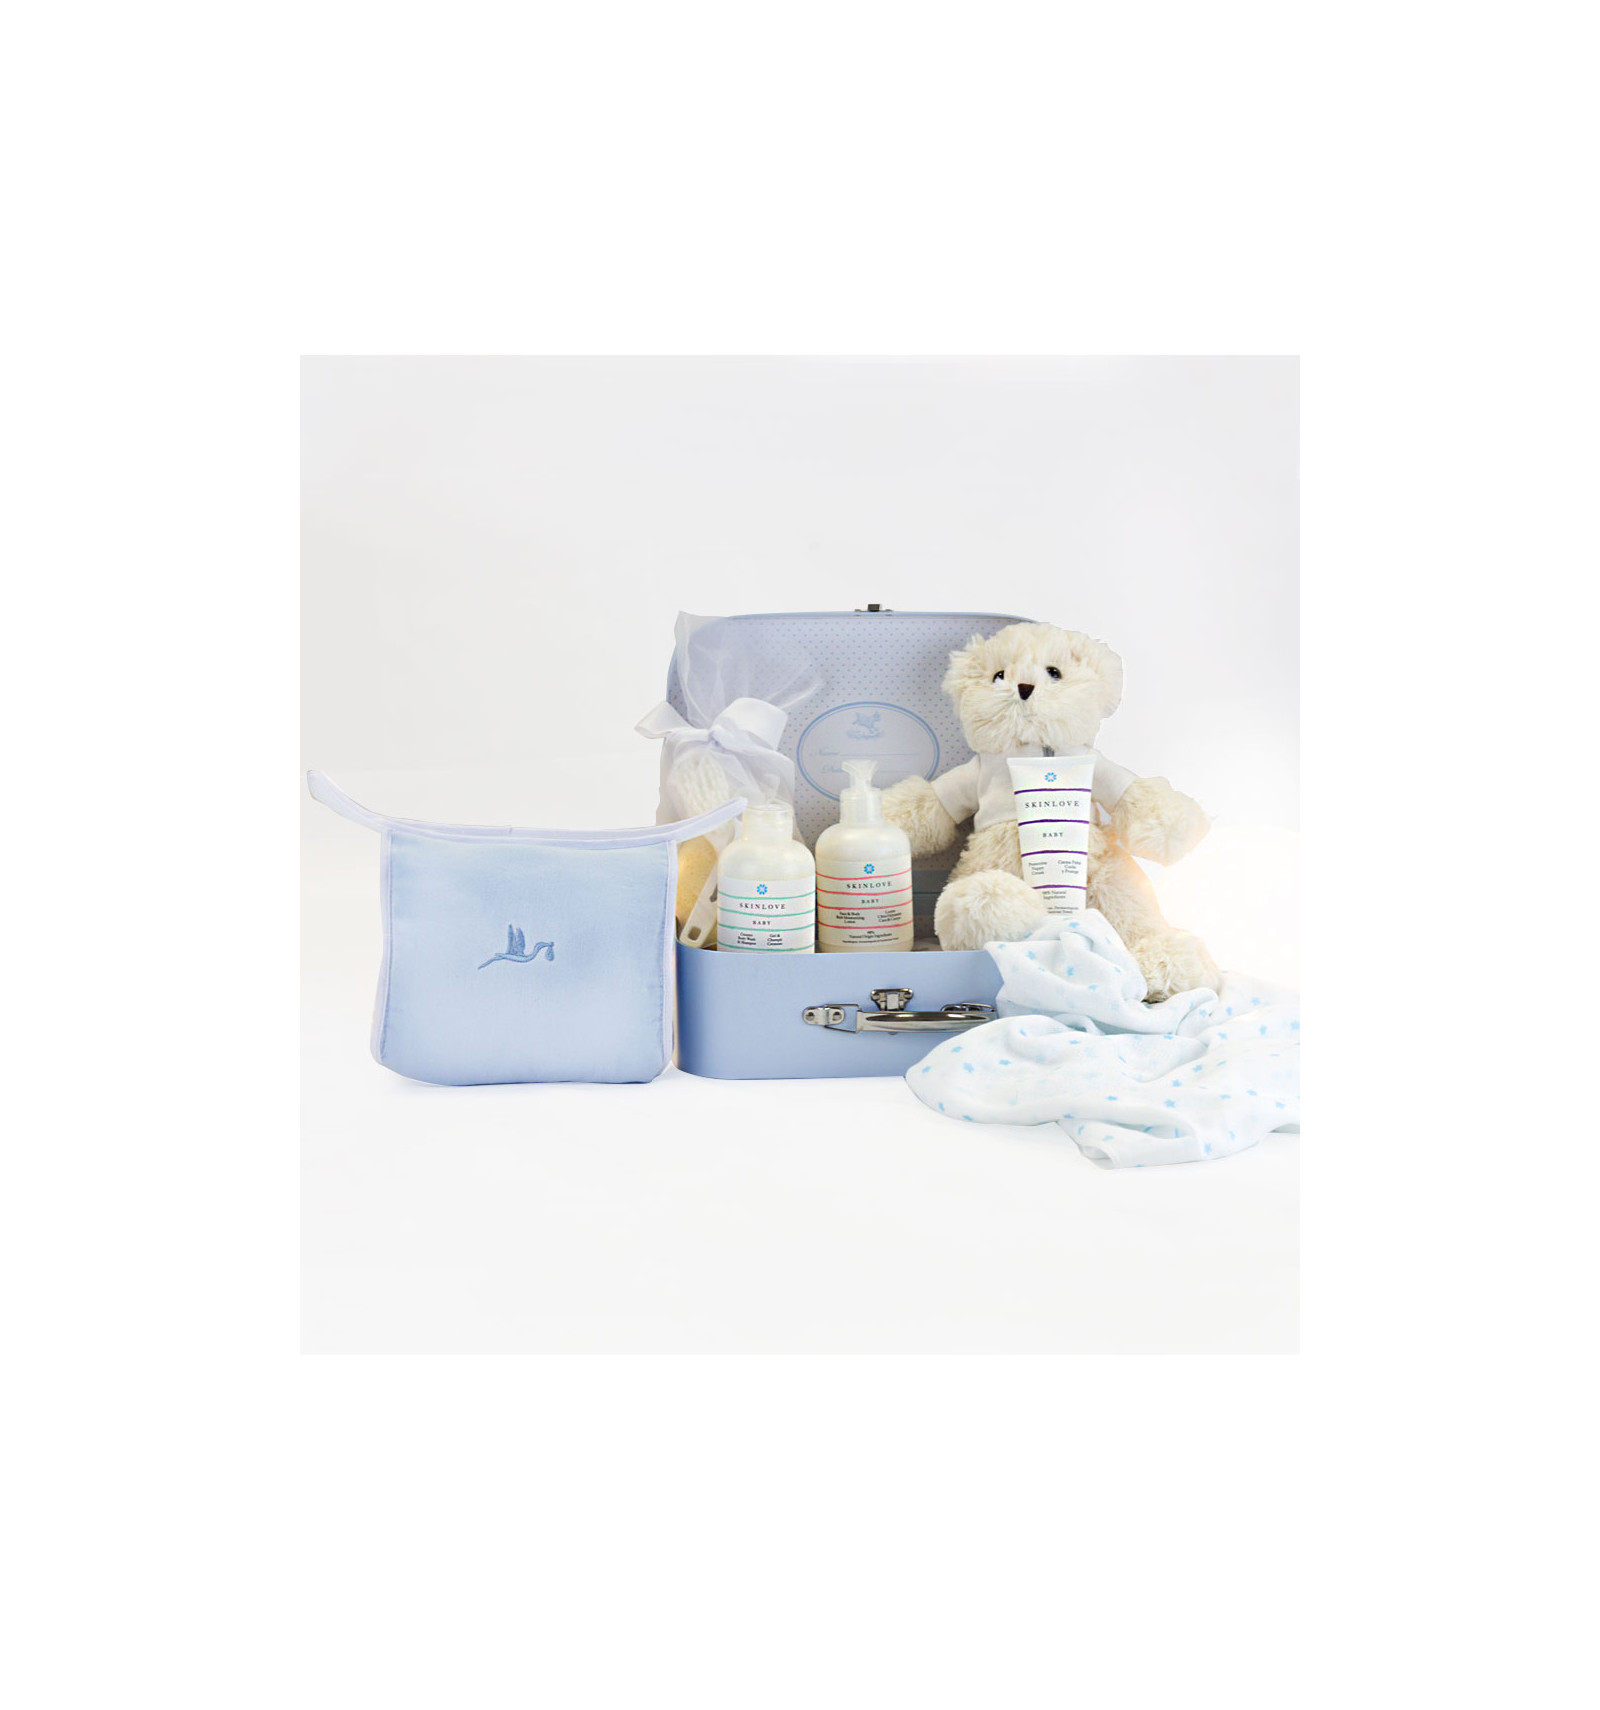 Malette avec pack cosmétique naturel pour bébés bleu